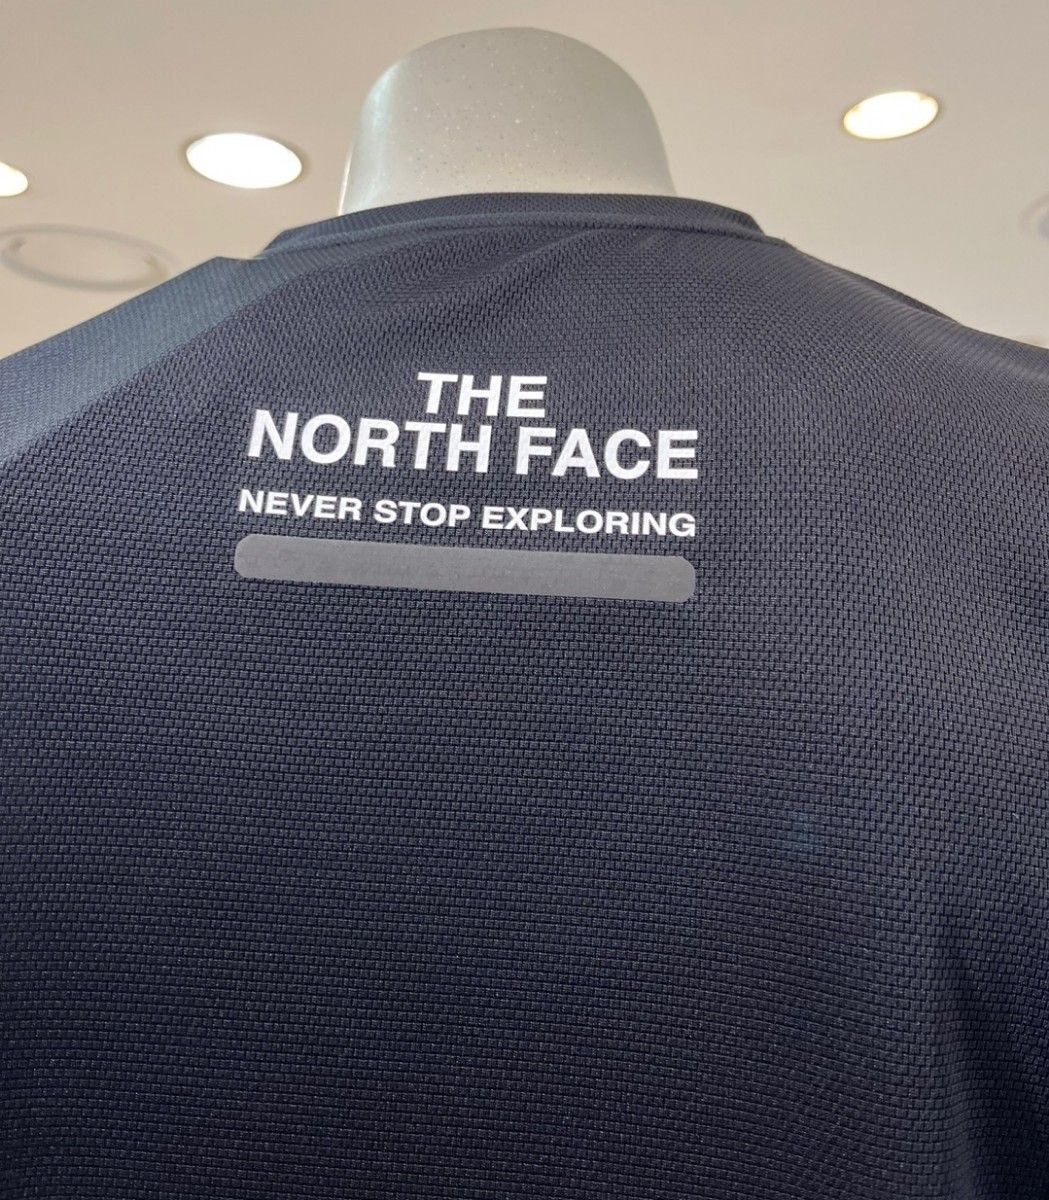 THE NORTH FACE ノースフェイス 新品 Tシャツ 半袖 トップス 3L 2XL